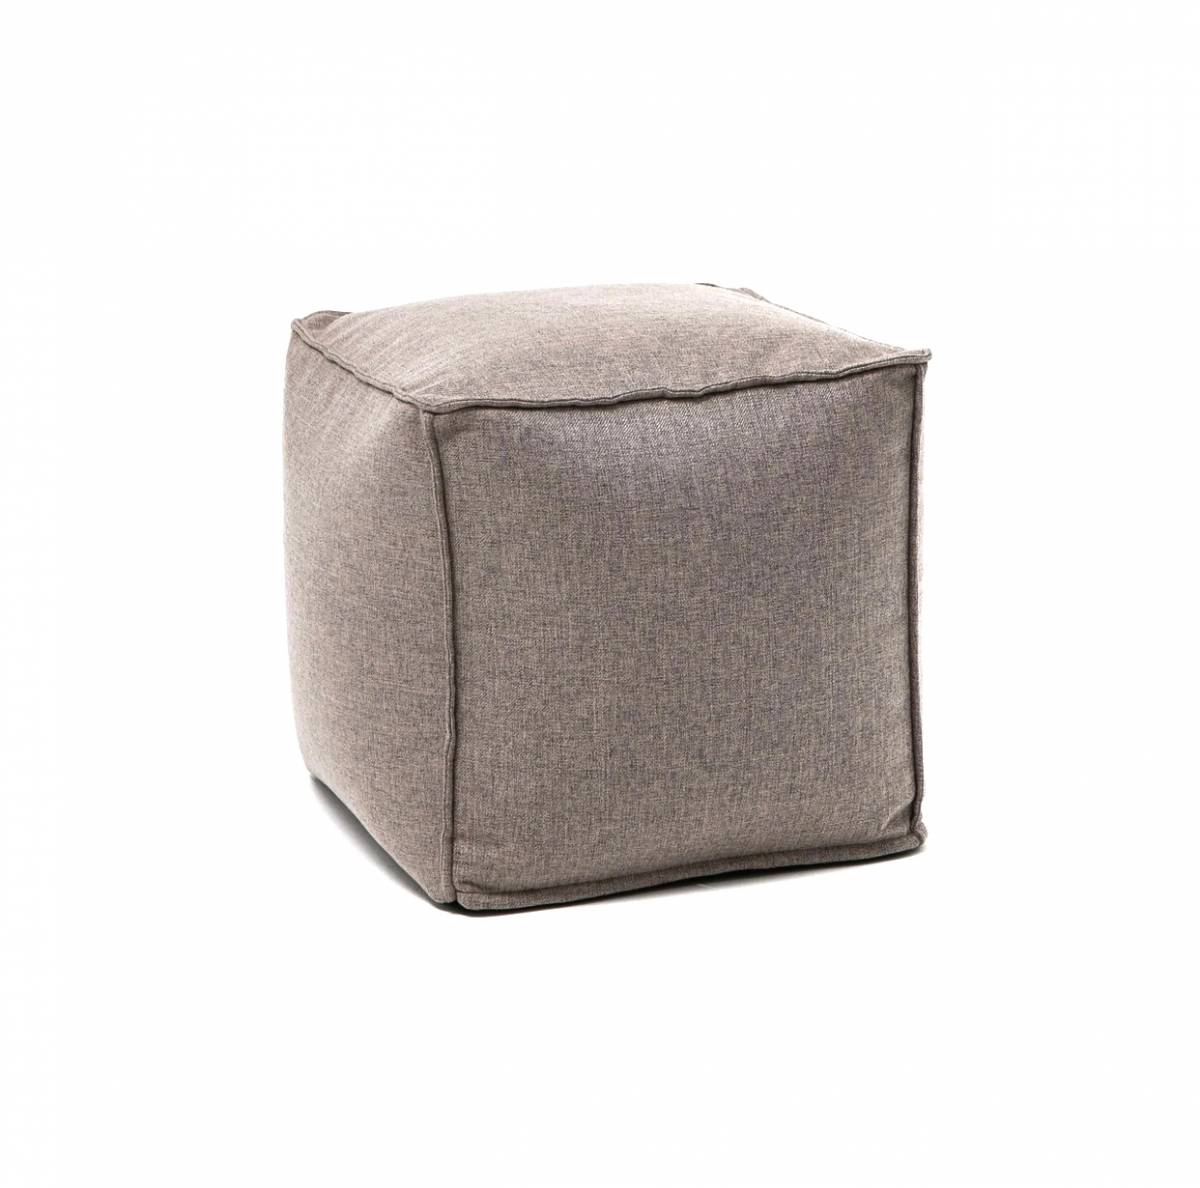 Купить серый пуф cube в Raroom